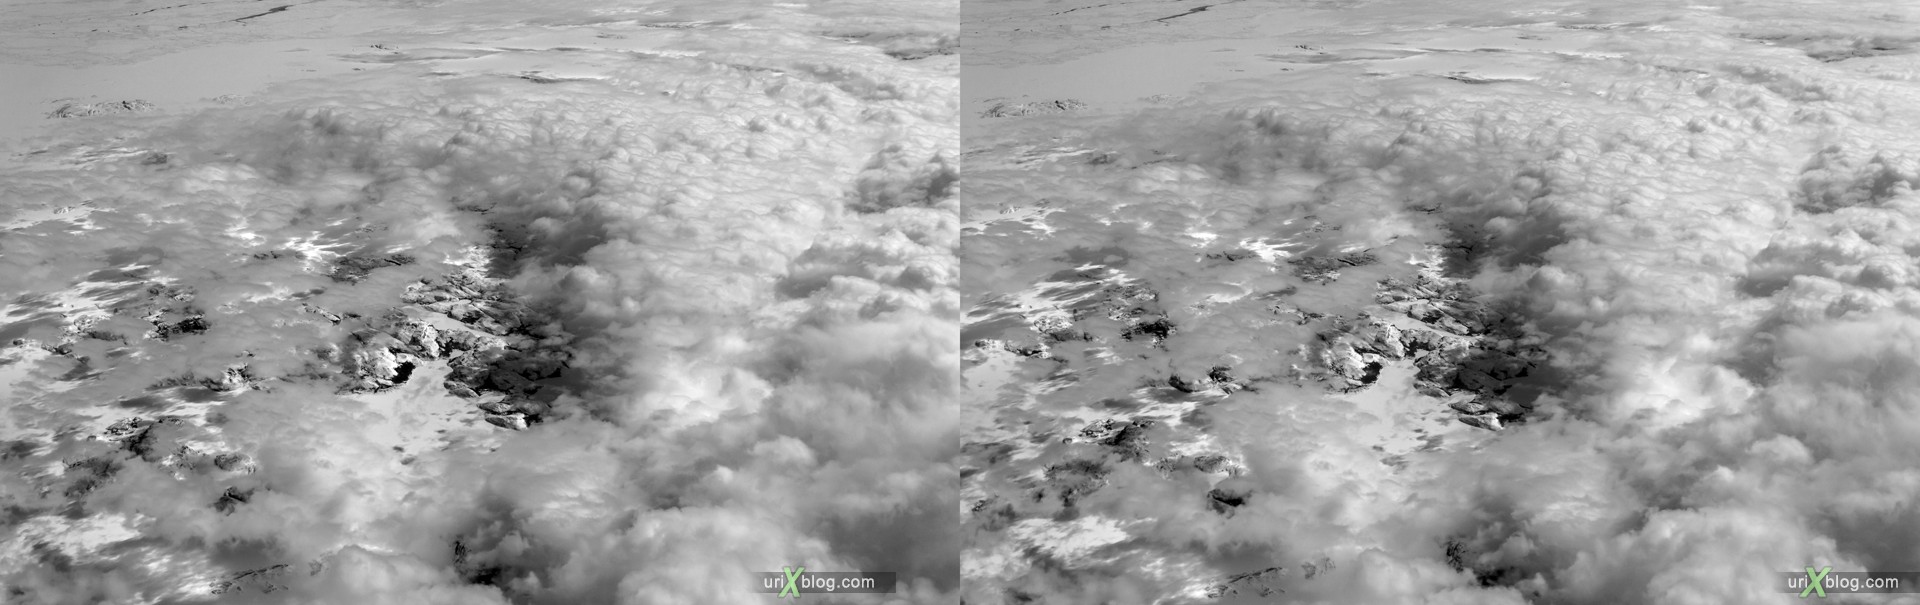 2013, берег, Ньюфаундленд и Лабрадор, панорама, самолёт, чёрно-белое, чб, снег, лёд, облака, горизонт, 3D, перекрёстные стереопары, стерео, стереопара, стереопары